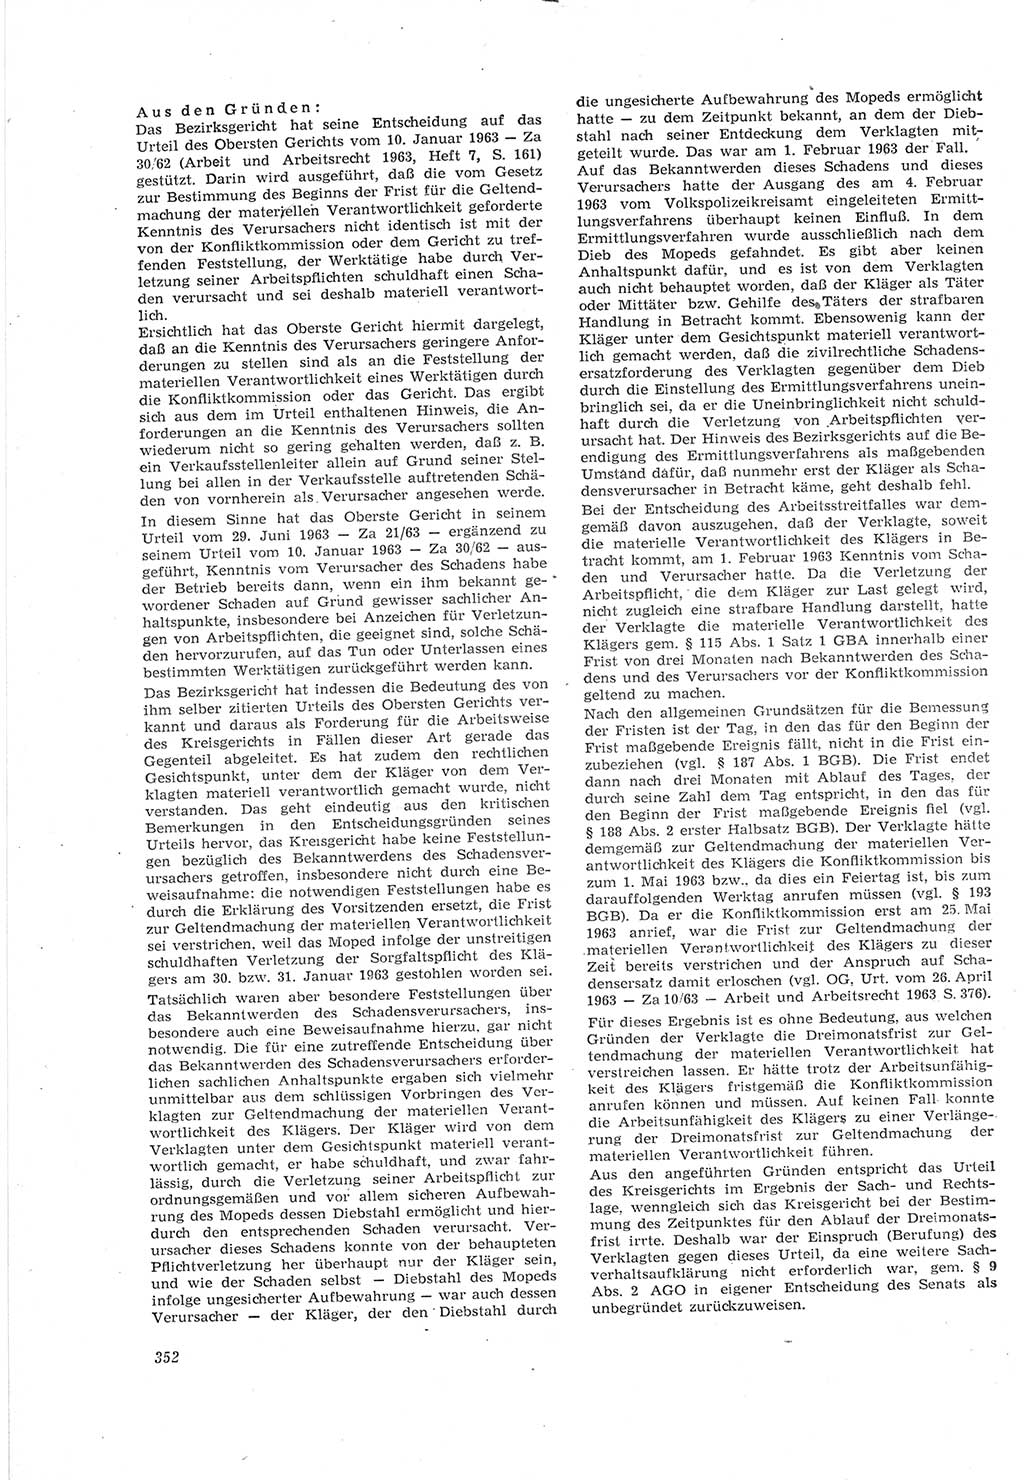 Neue Justiz (NJ), Zeitschrift für Recht und Rechtswissenschaft [Deutsche Demokratische Republik (DDR)], 18. Jahrgang 1964, Seite 352 (NJ DDR 1964, S. 352)